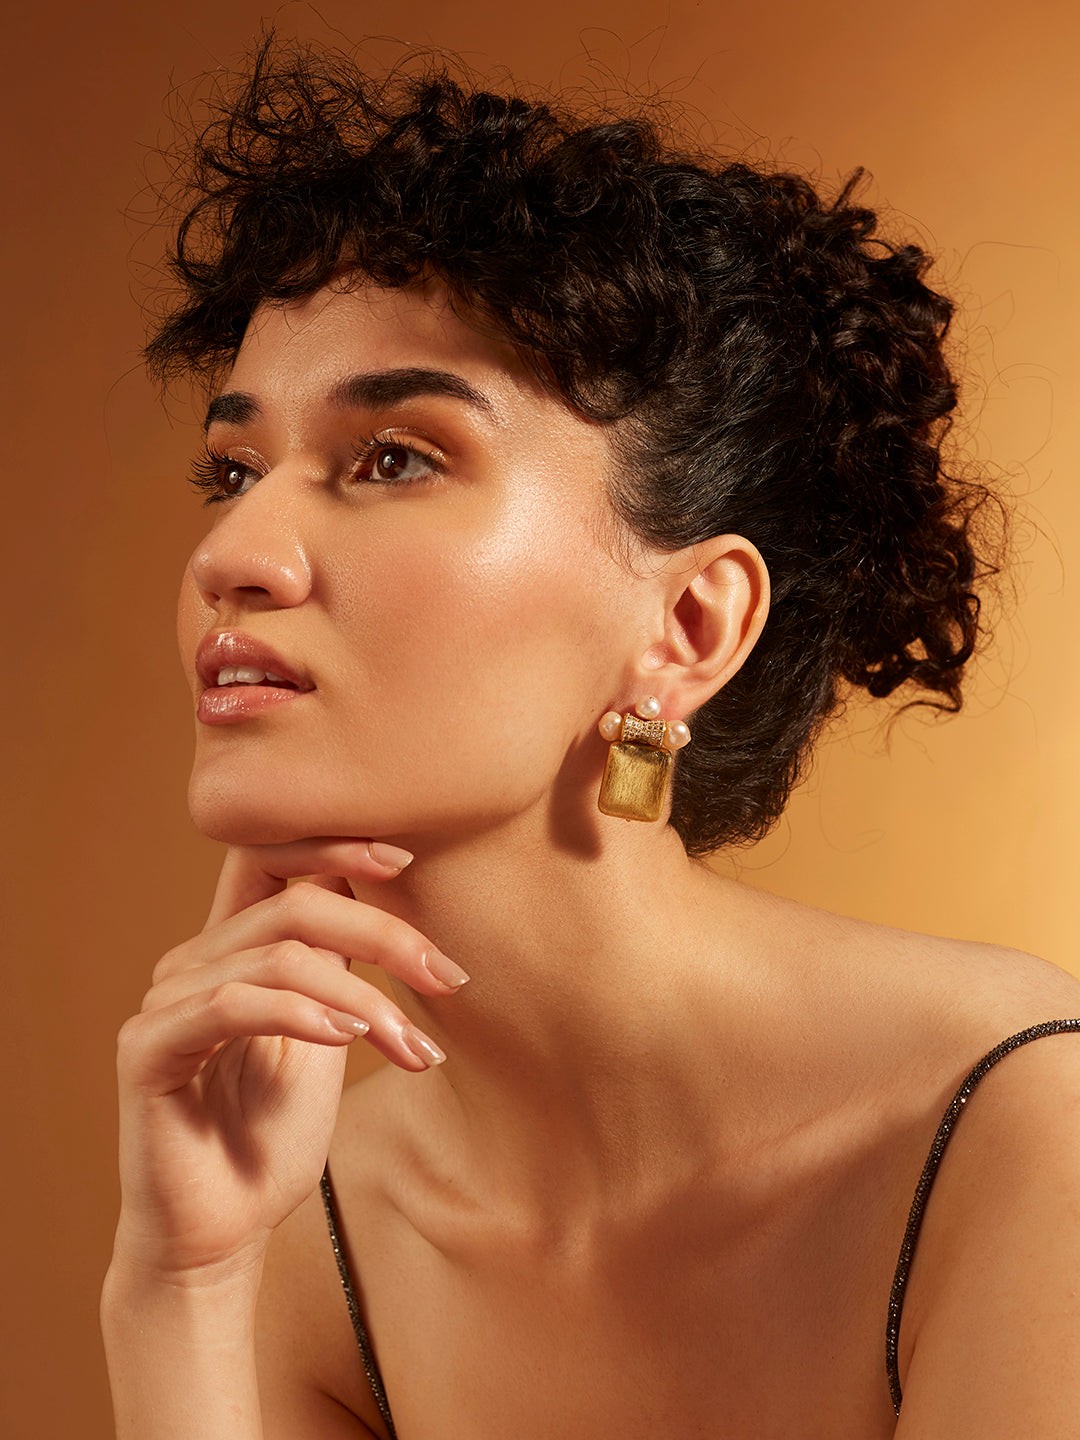 Golden Cube Stud Earrings